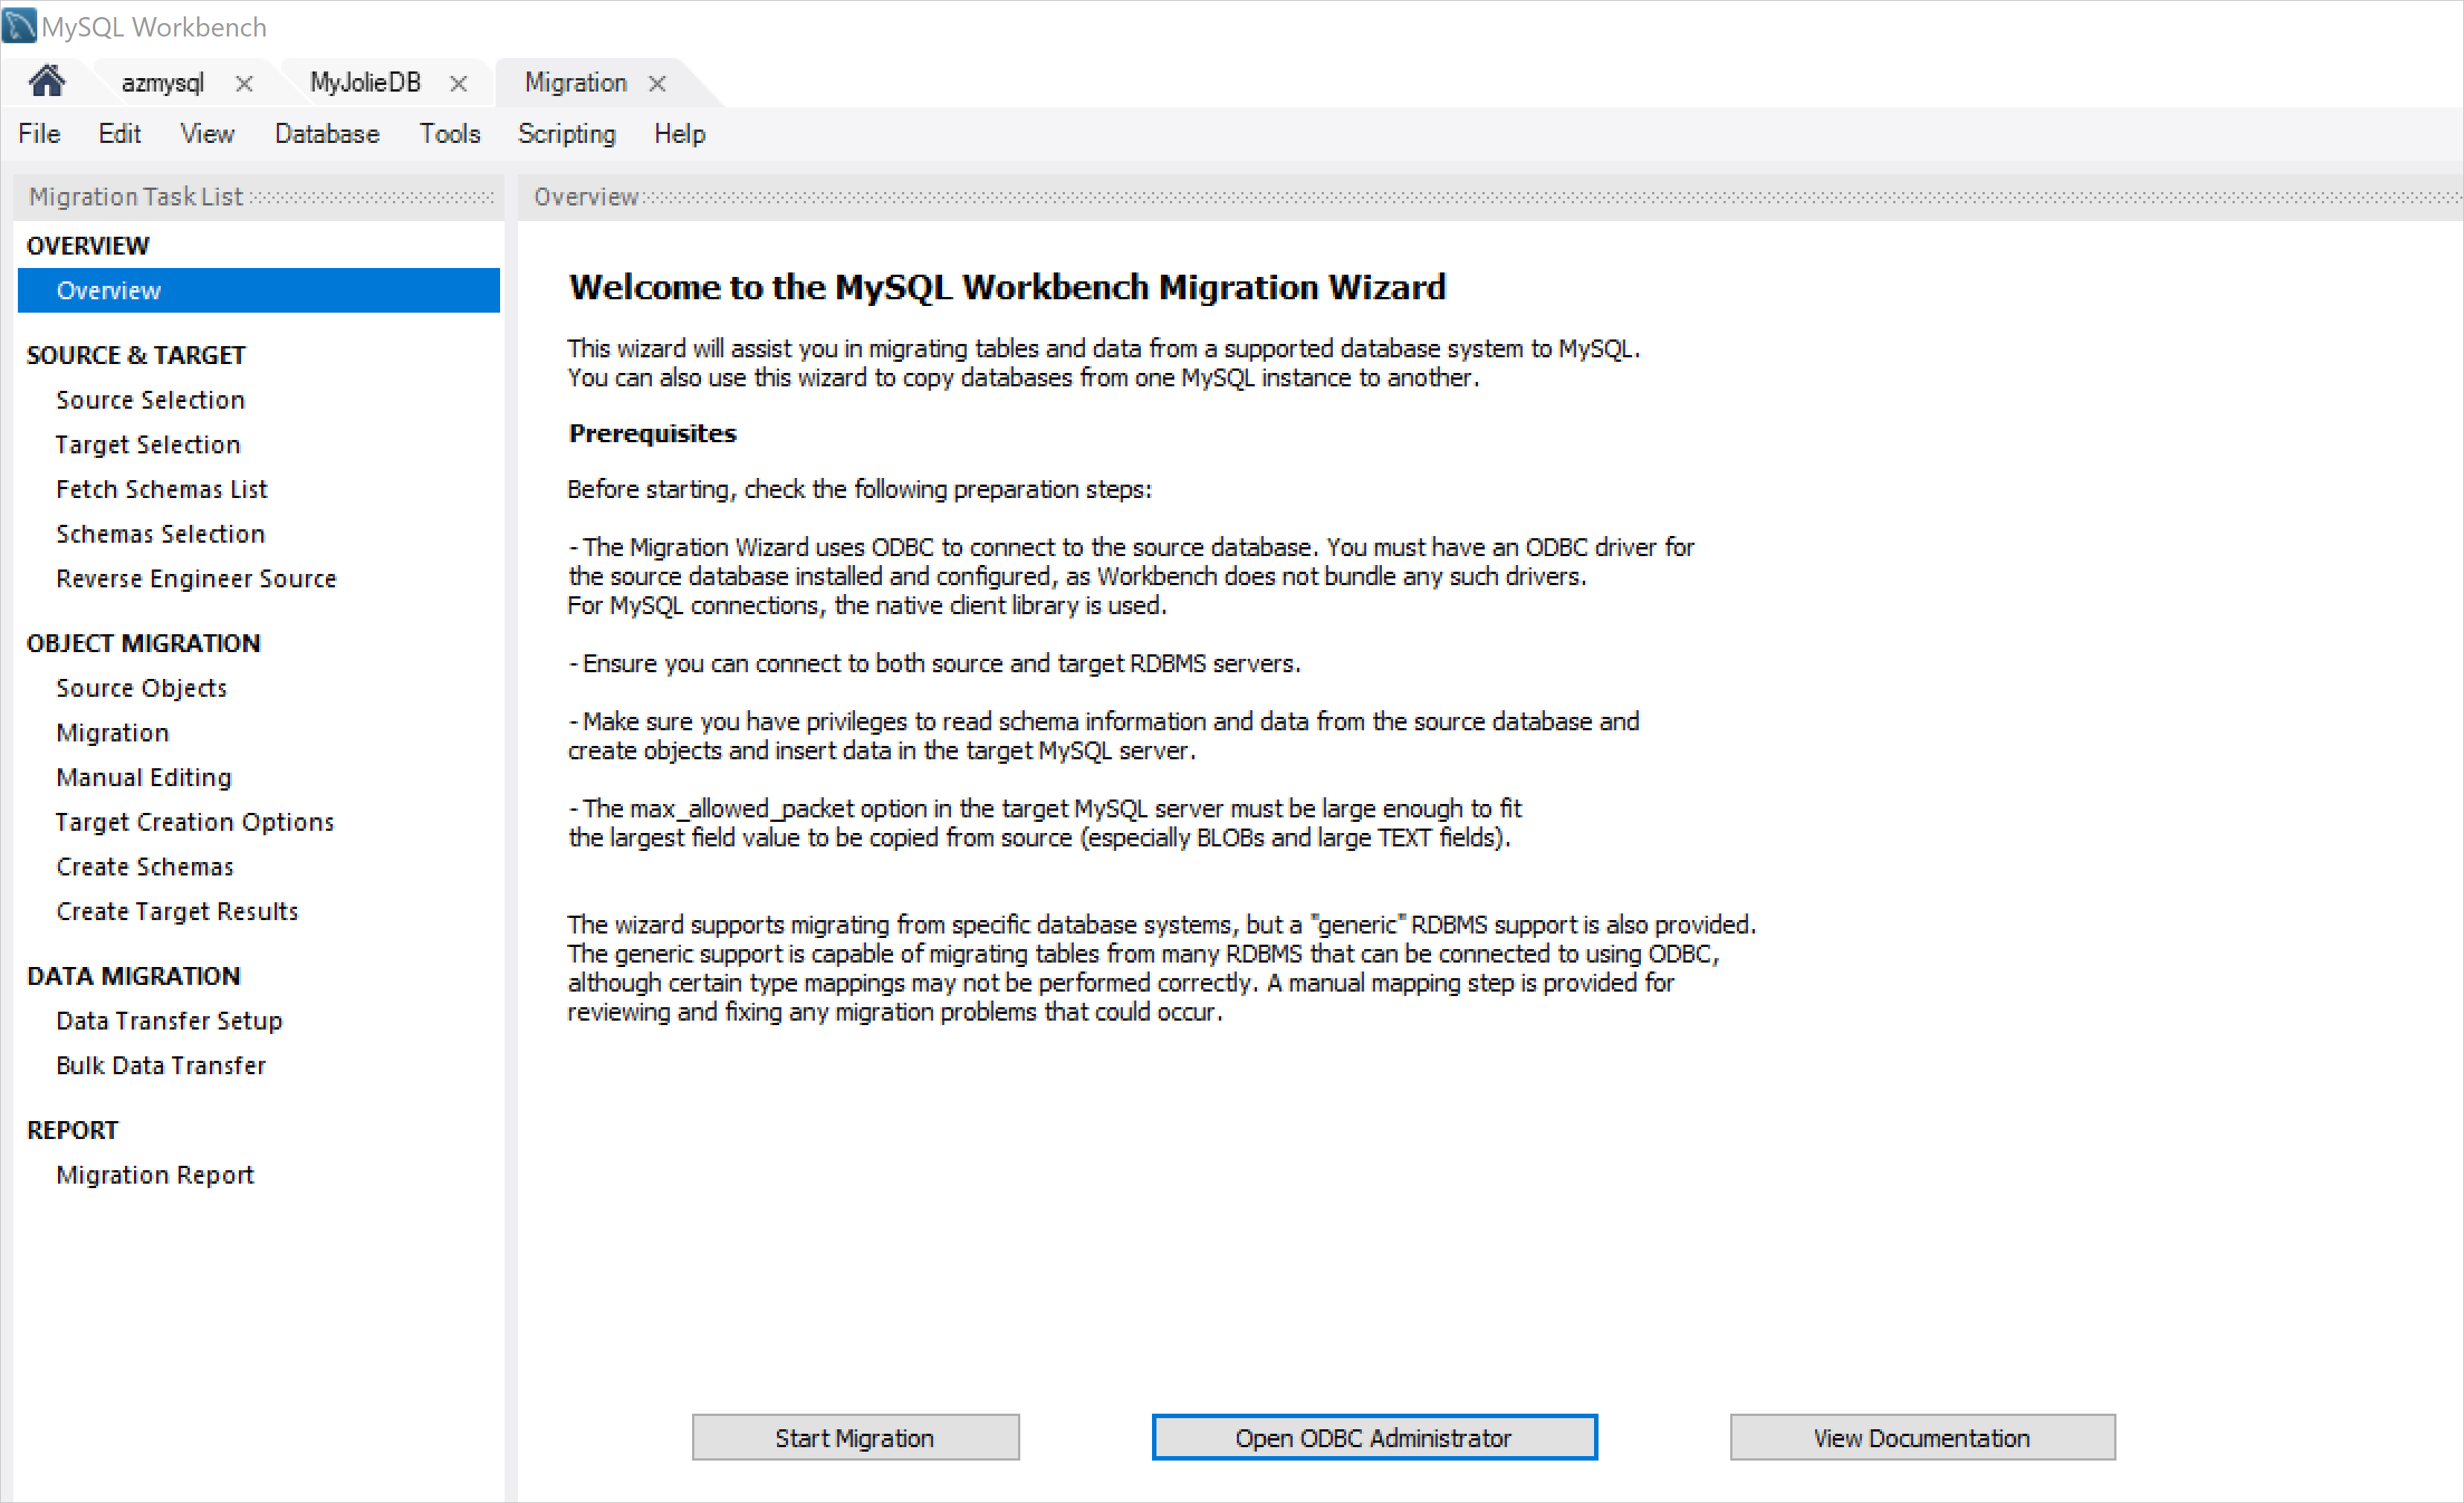 MySQL Workbench Migration Wizard welcome page